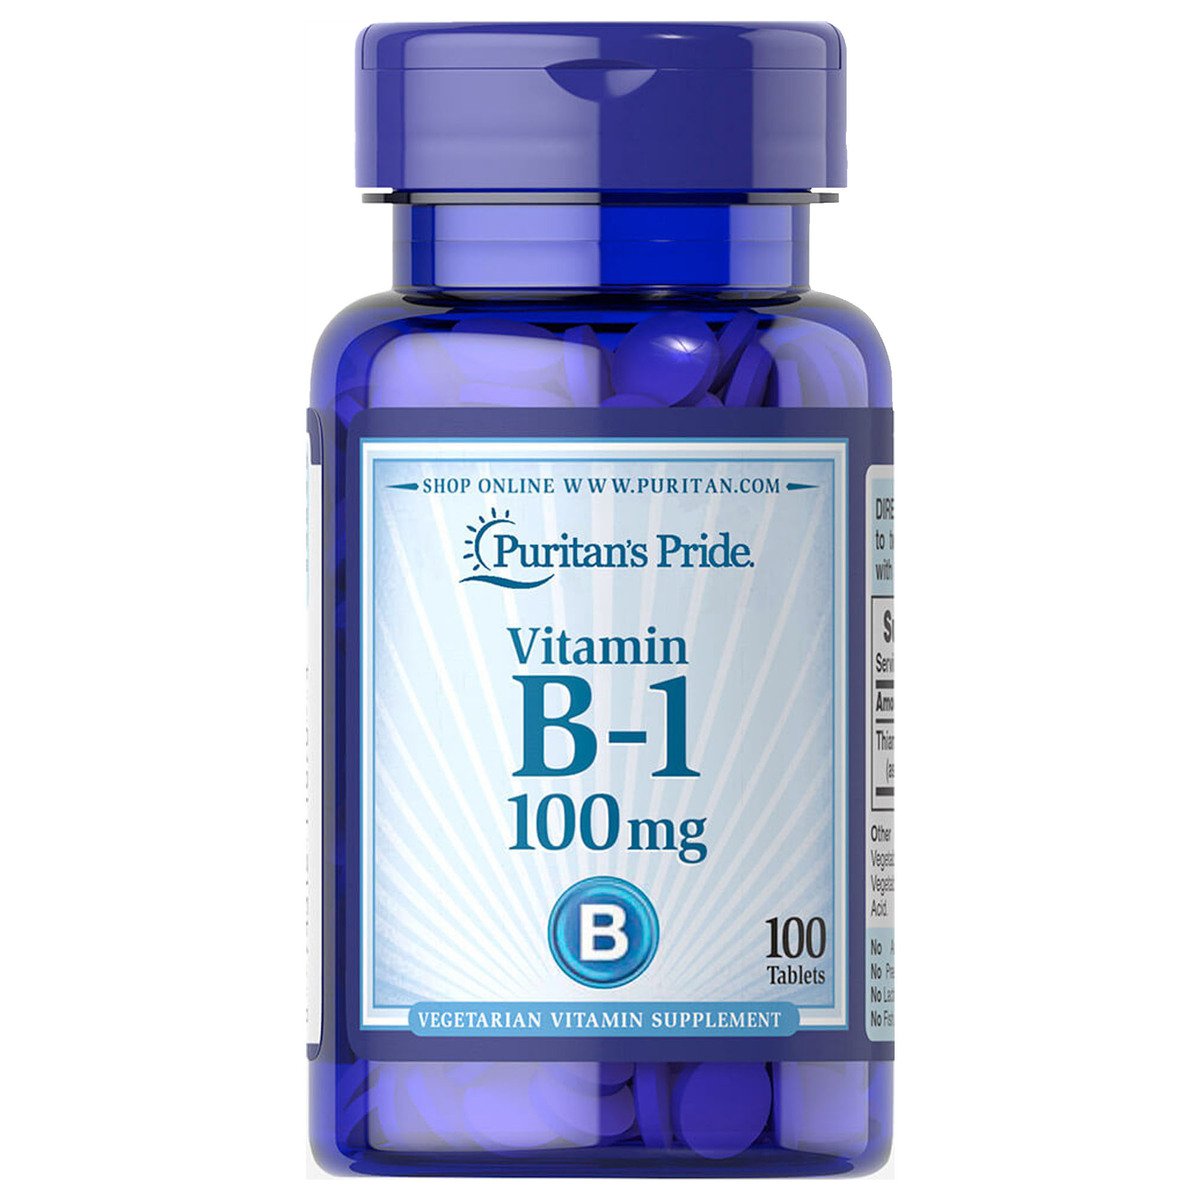 Puritan's Pride Vitamin B-1 100mg 100pcs